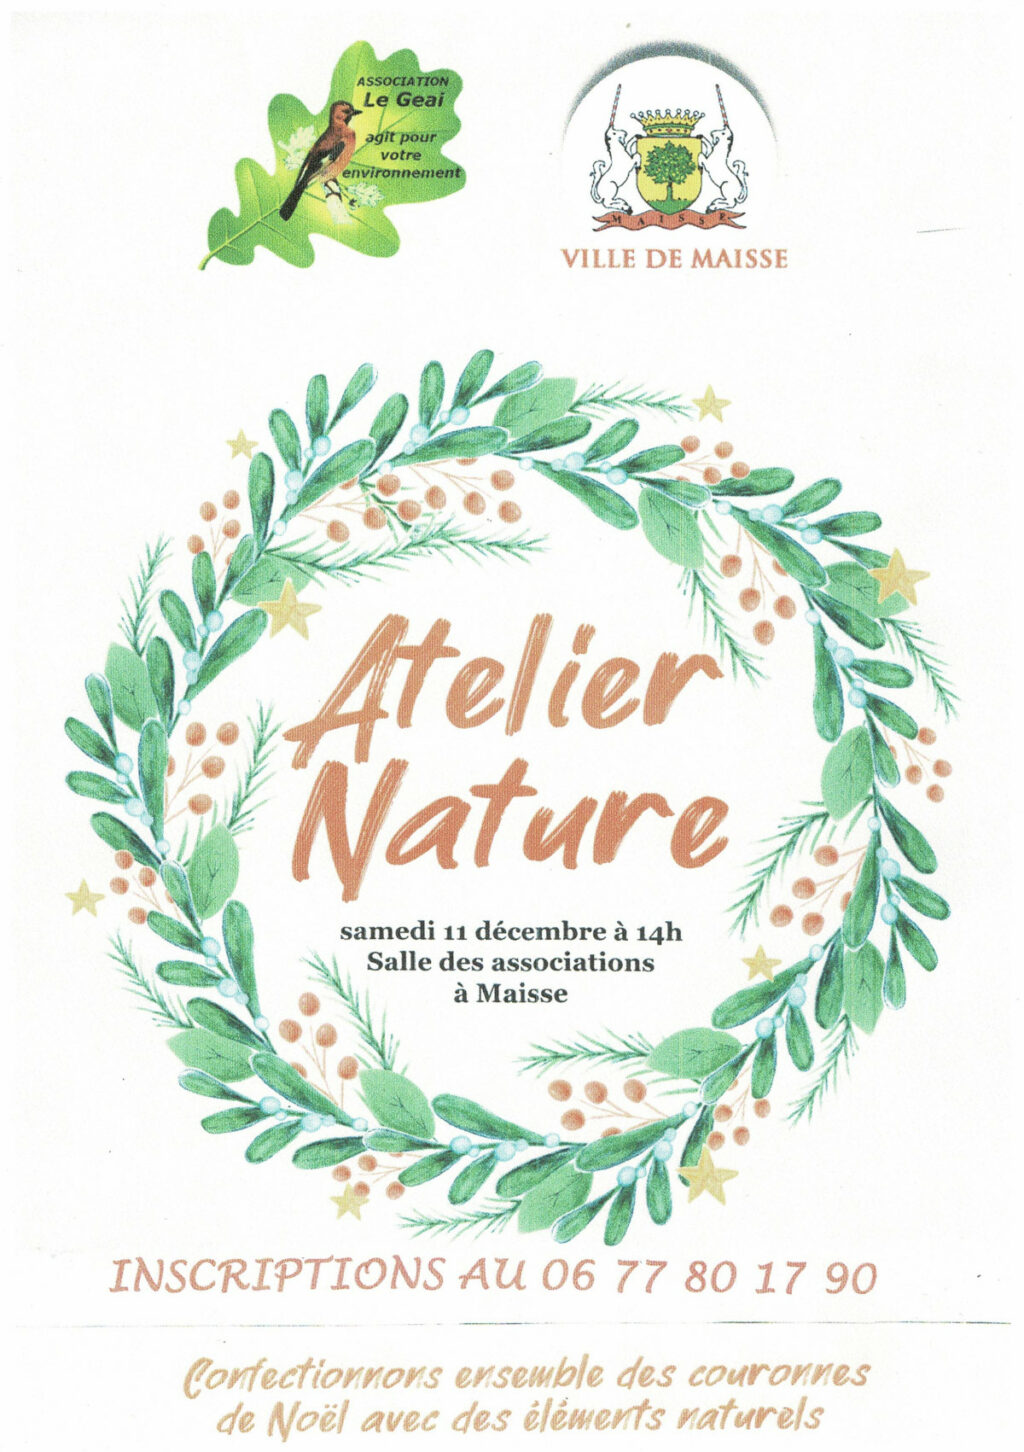 Atelier Nature "confection de couronnes de Noël" le samedi 11 décembre 2021 à Maisse